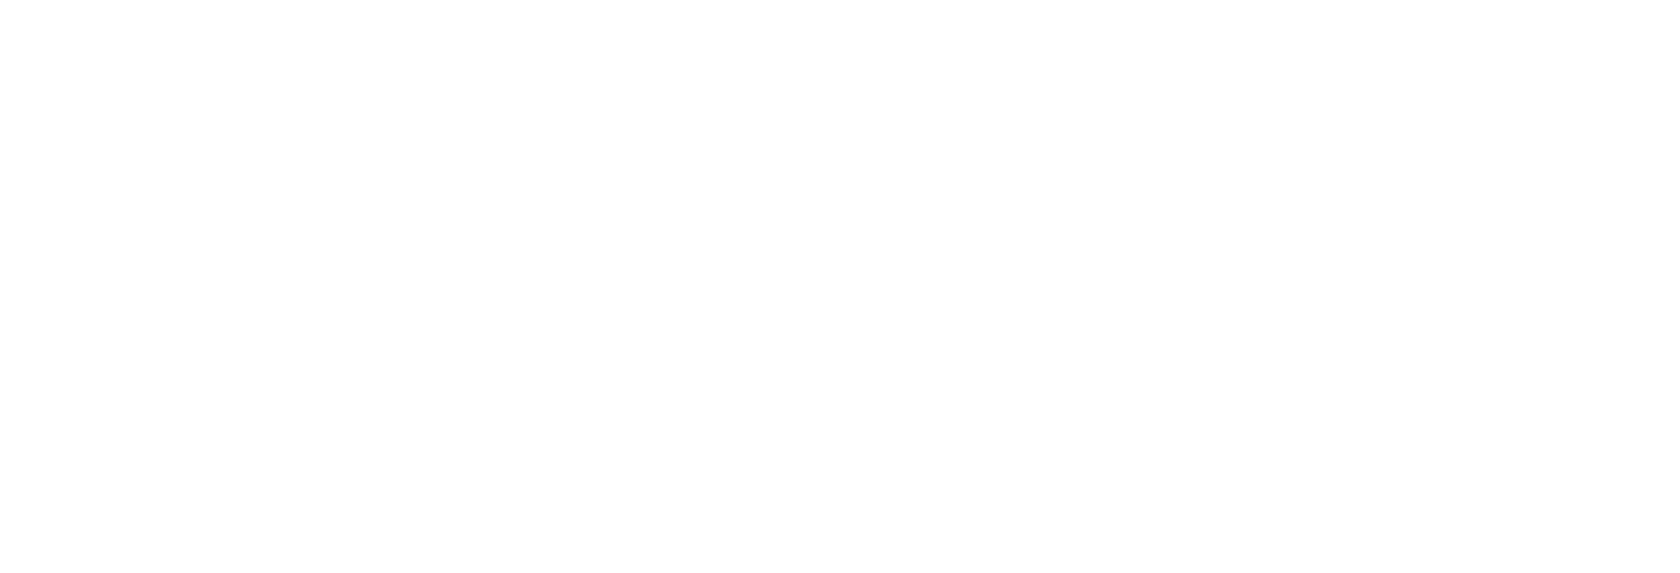 Дворец Торжеств в стиле традиционной русской усадьбы, конкурсный проект, Архитектурное бюро Романа Леонидова, ночная подсветка фасада 